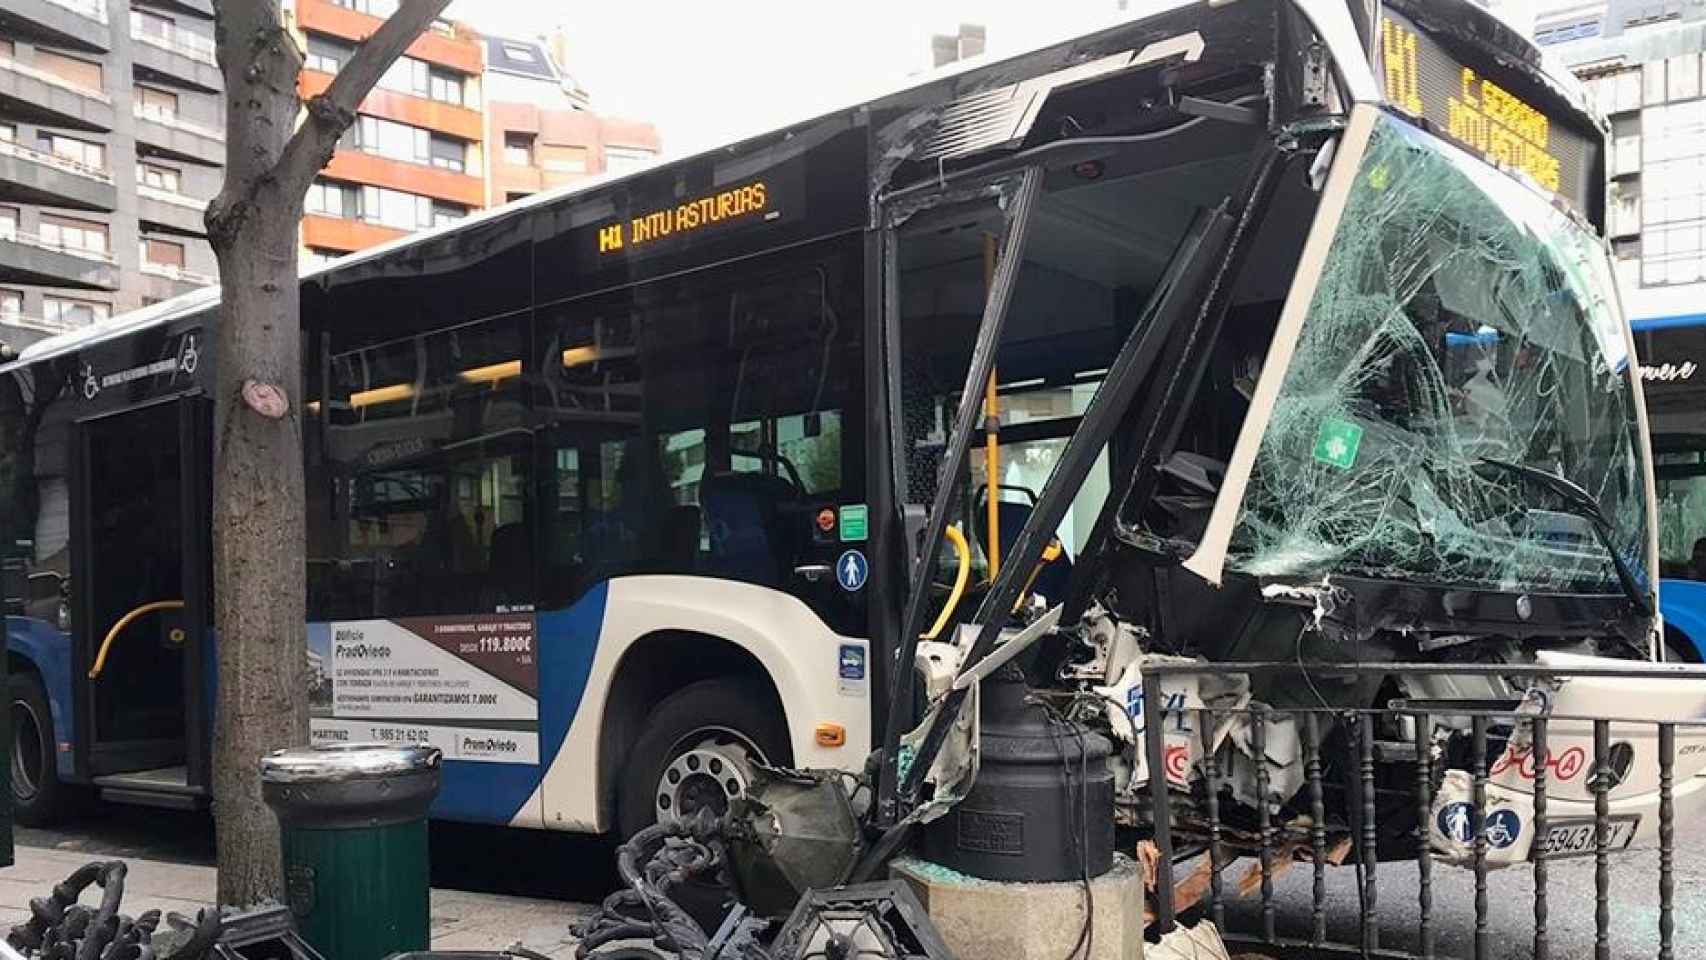 Un autobús urbano, de transporte público, impacta contra una farola en Oviedo / EP